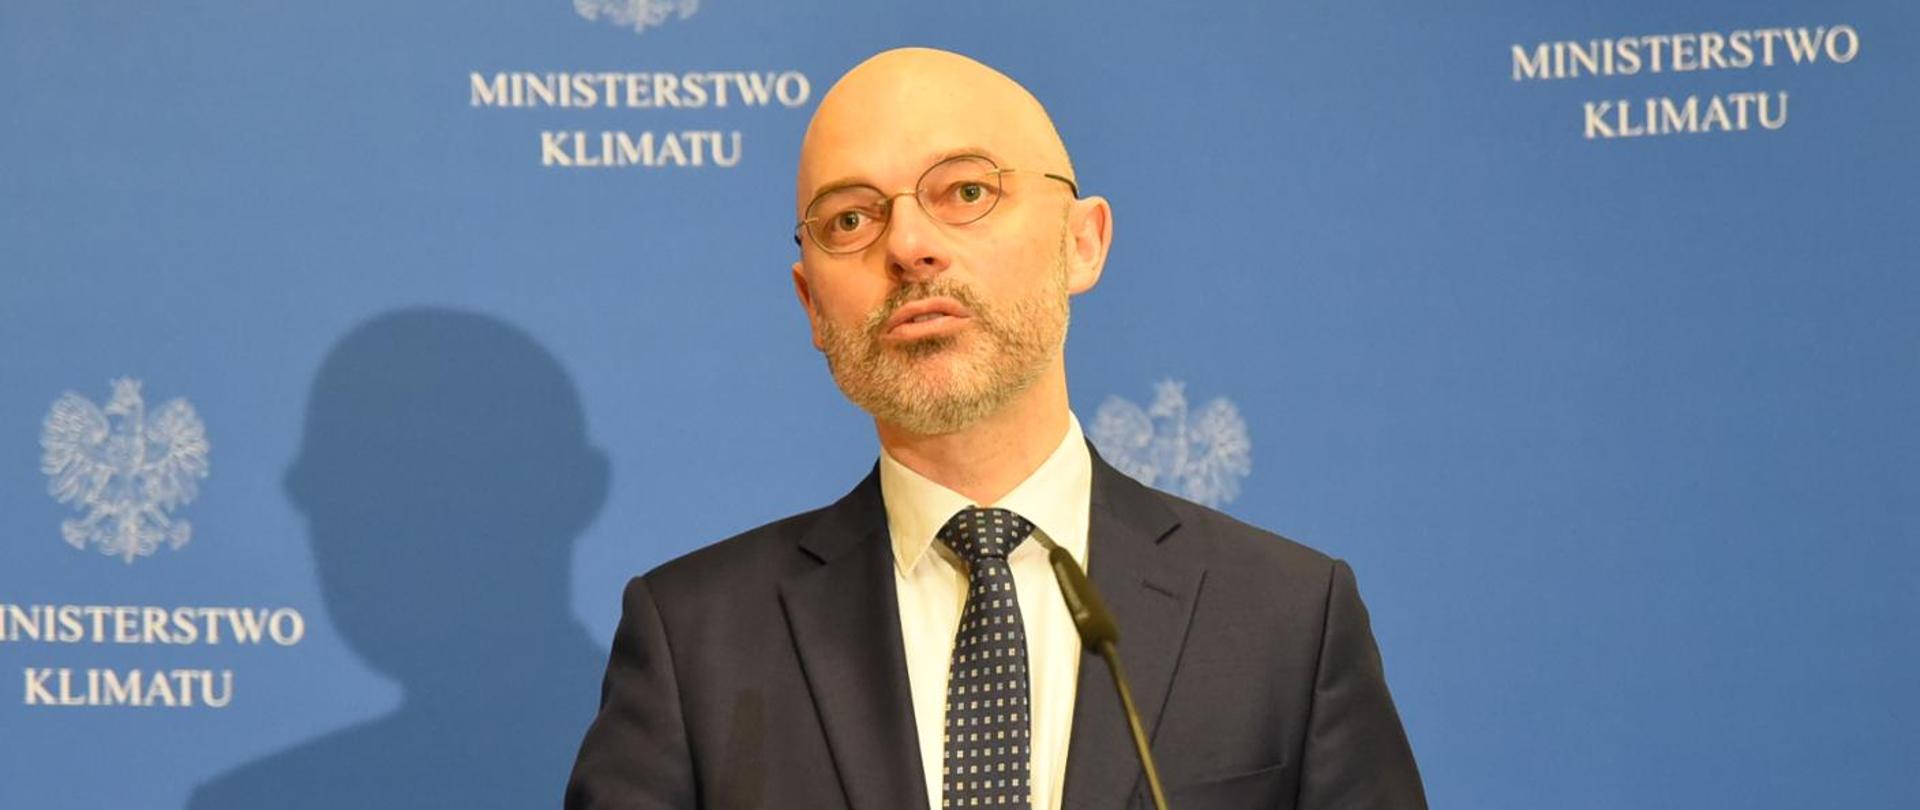 Minister klimatu Michał Kurtyka